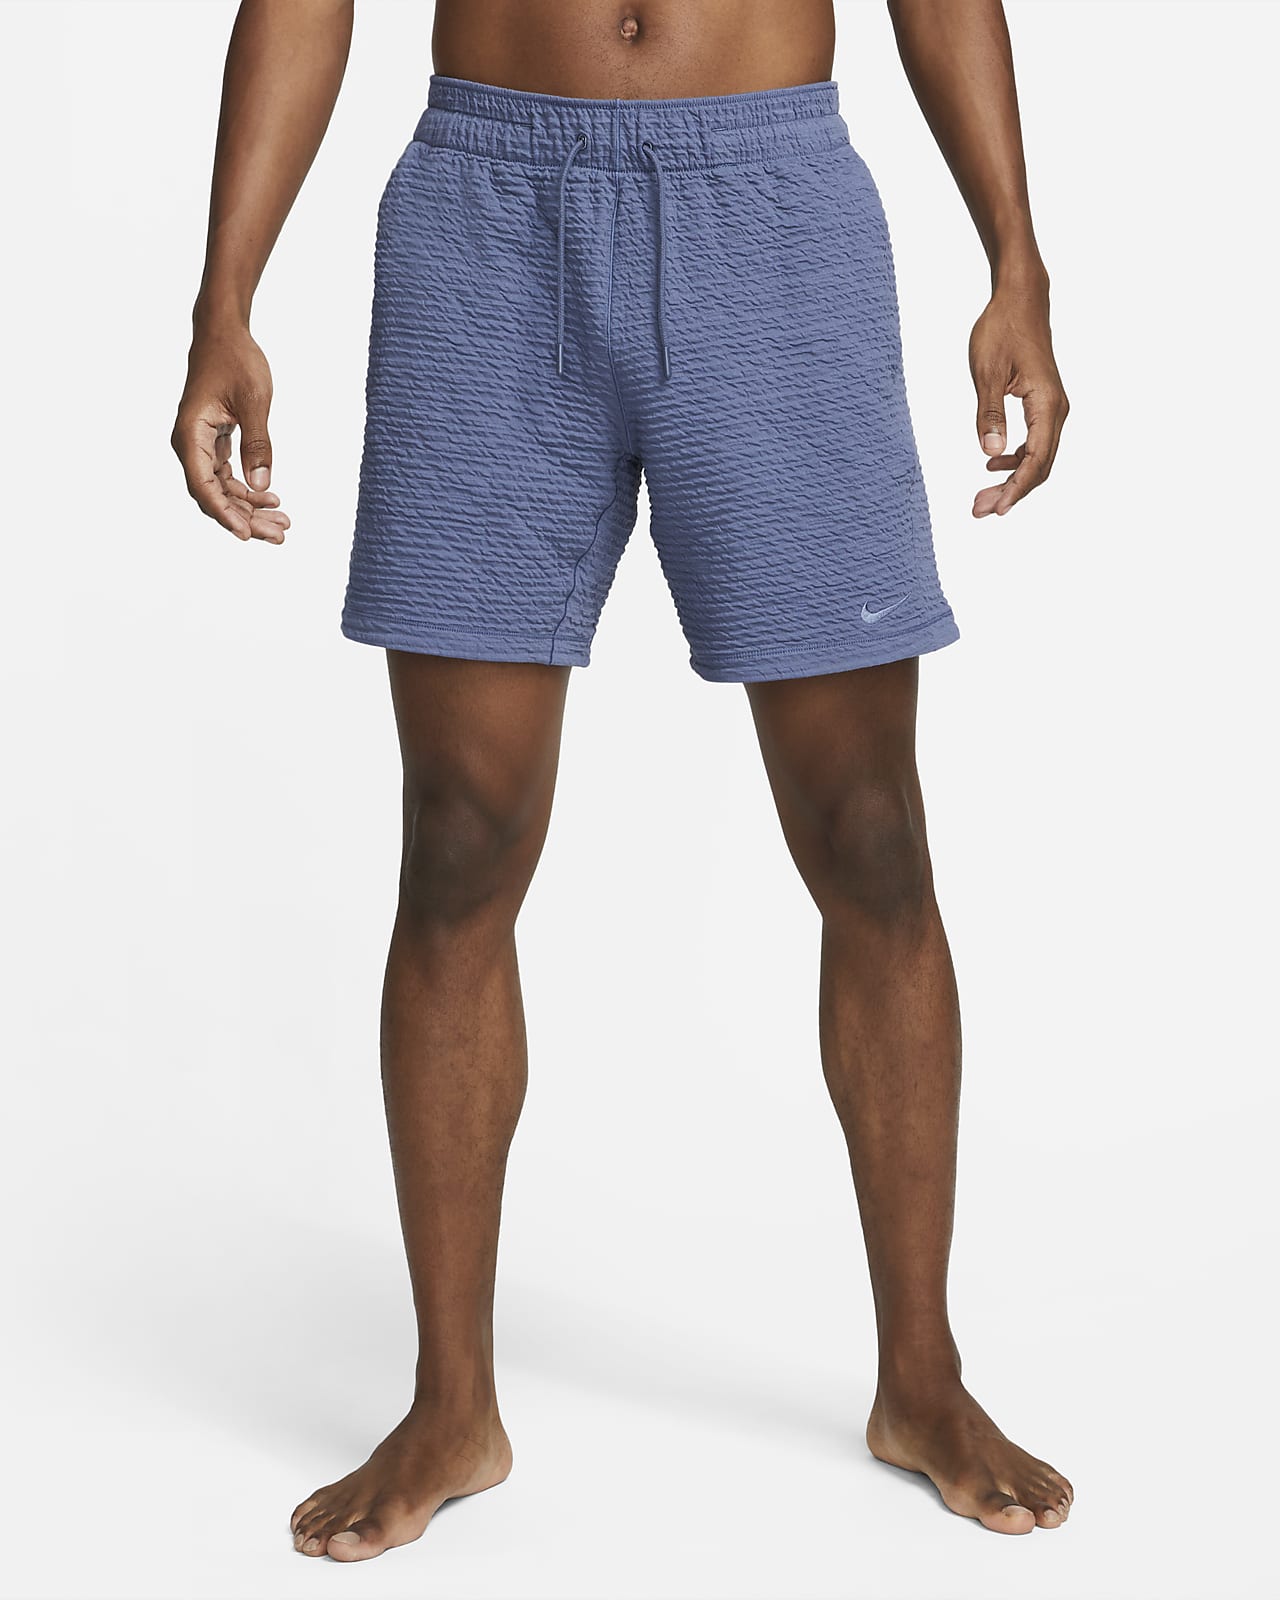 cuidadosamente personaje en cualquier sitio Nike Yoga Pantalón corto Dri-FIT de 18 cm sin forro - Hombre. Nike ES